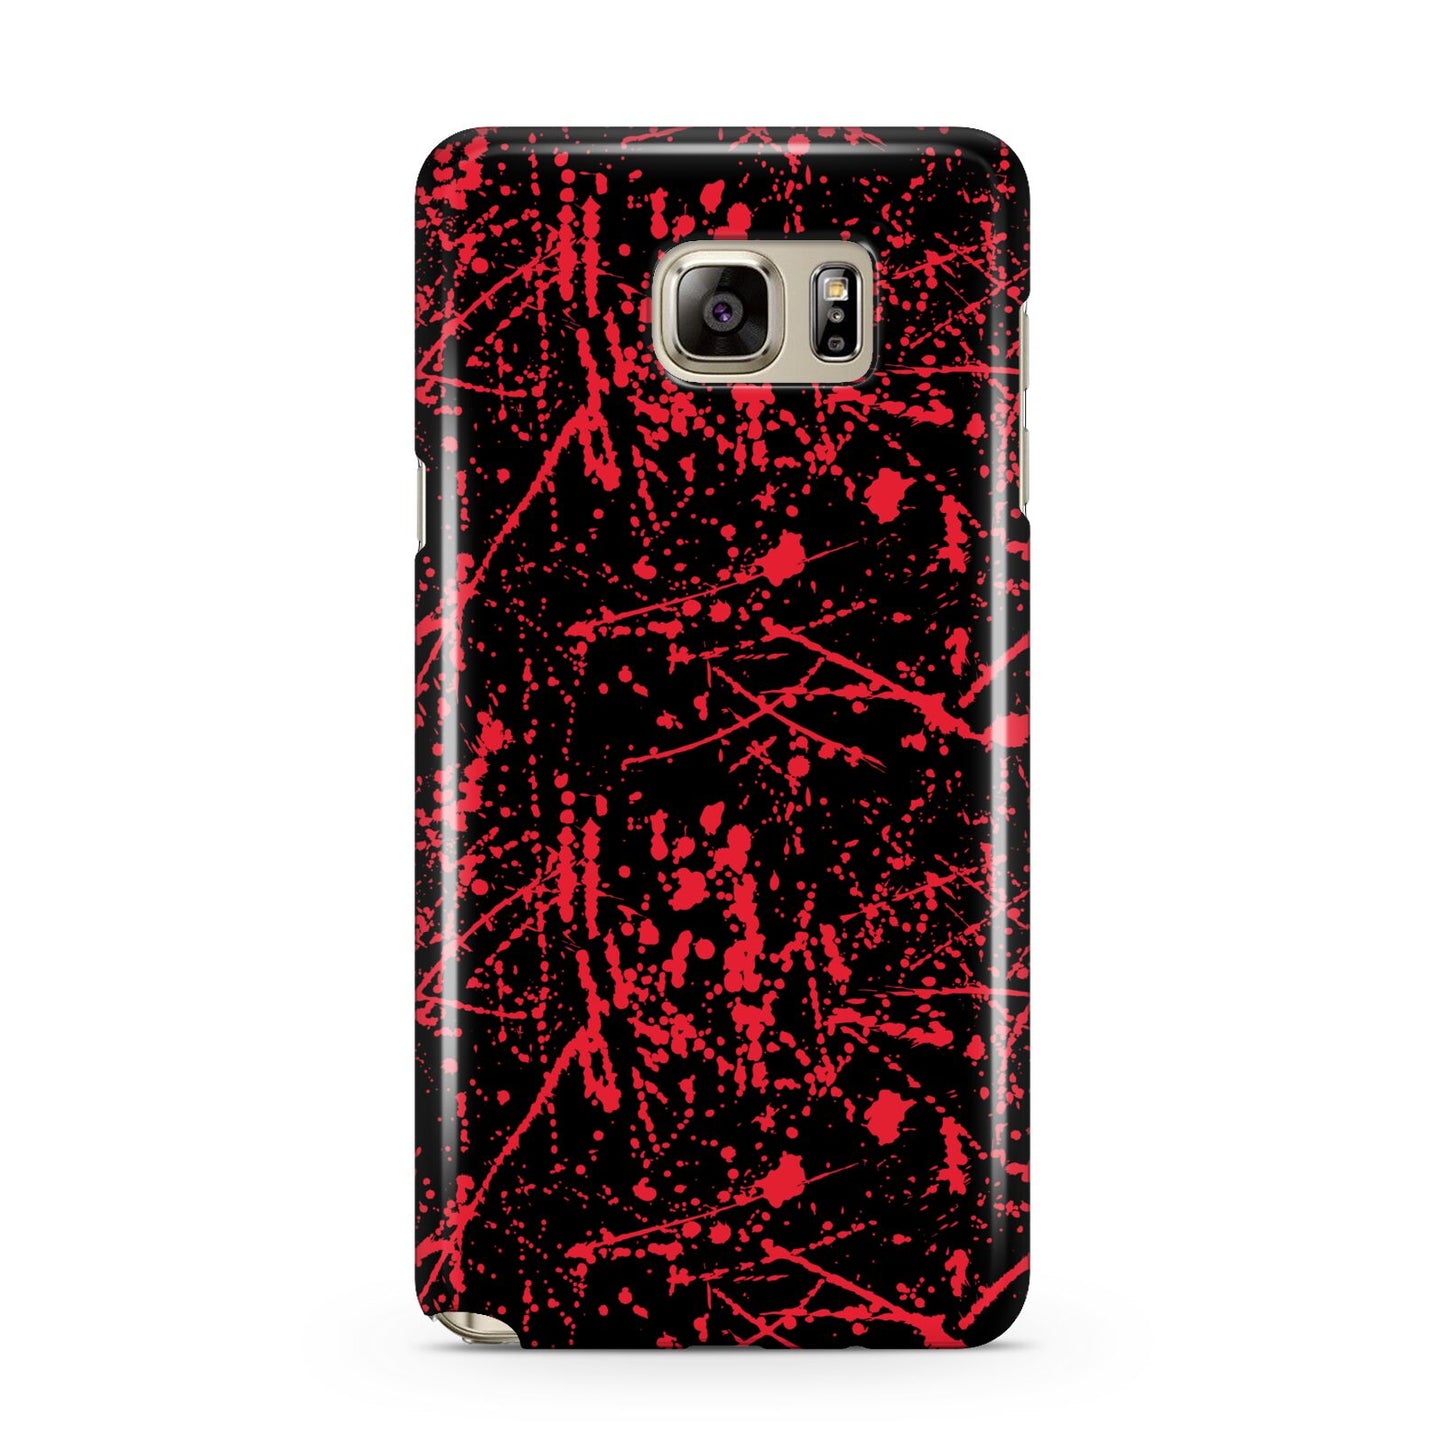 Blood Splatters Samsung Galaxy Note 5 Case